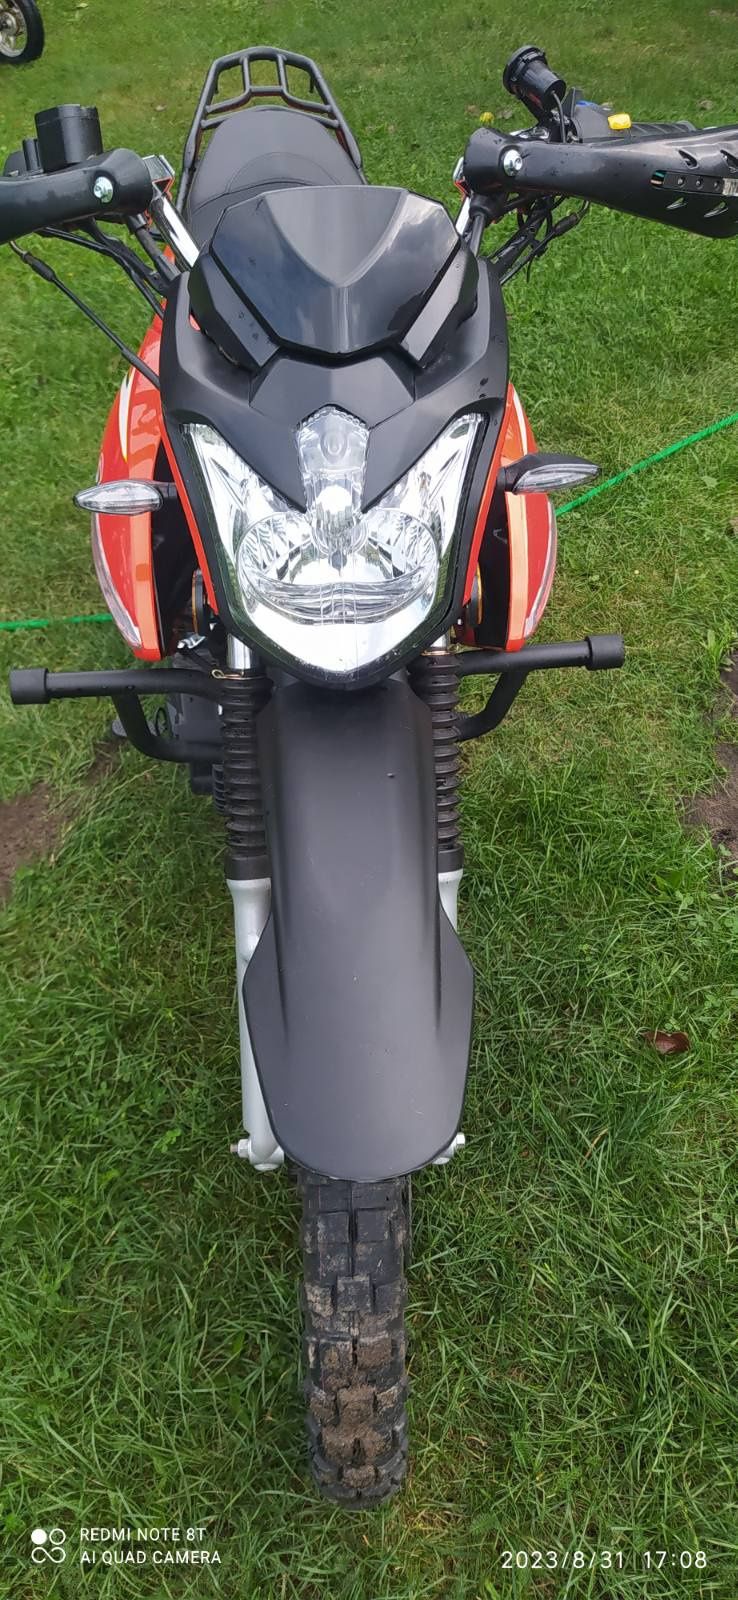 Мотоцикл Spark r26 200cc